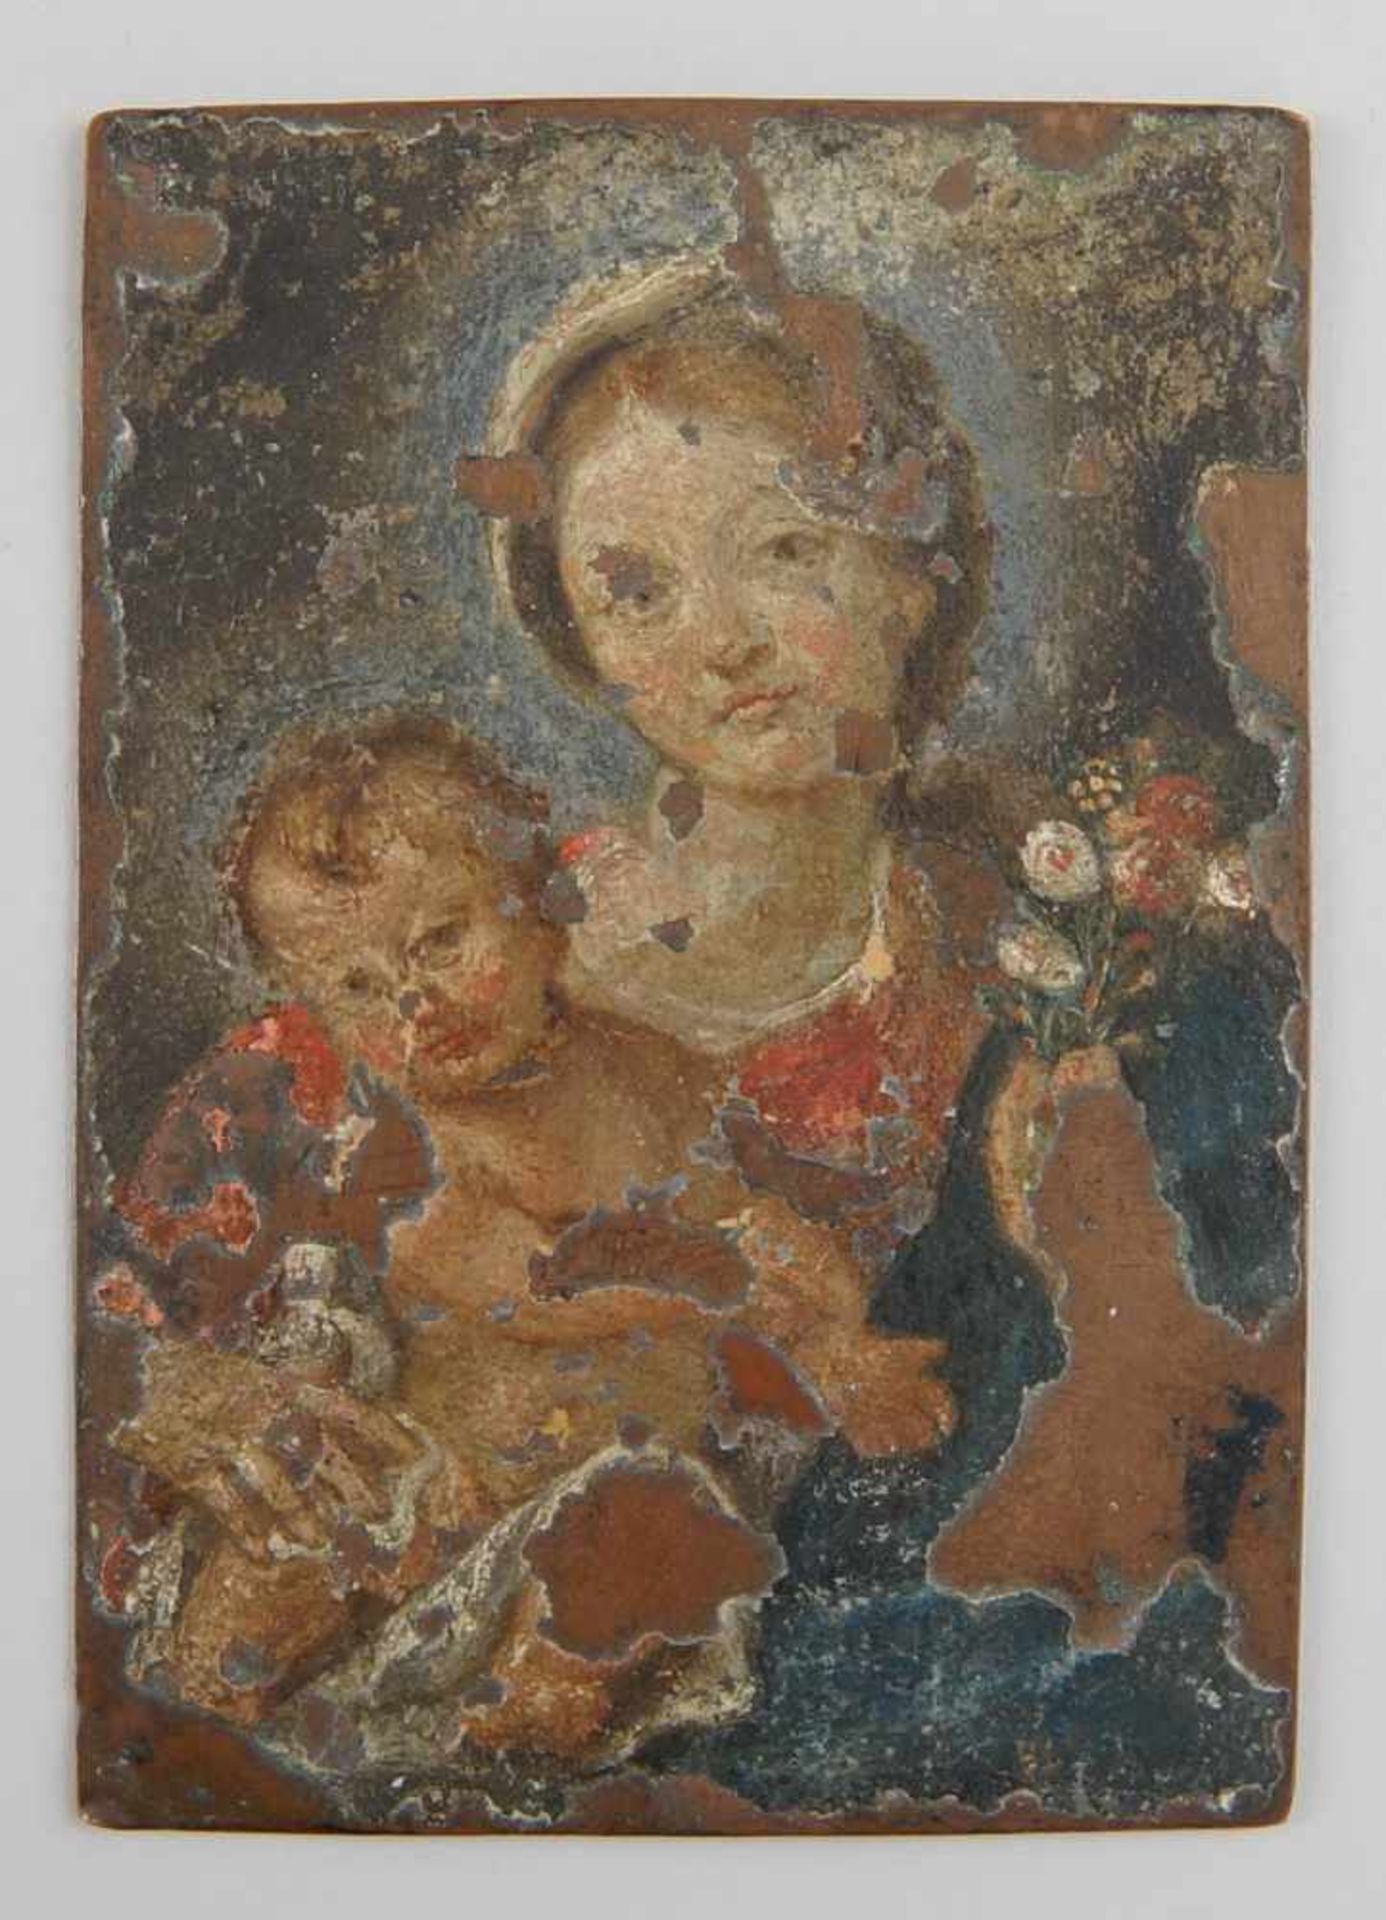 Maria mit Kind, auf Kupfer, verso fein graviert, 13x9,5cm- - -24.00 % buyer's premium on the